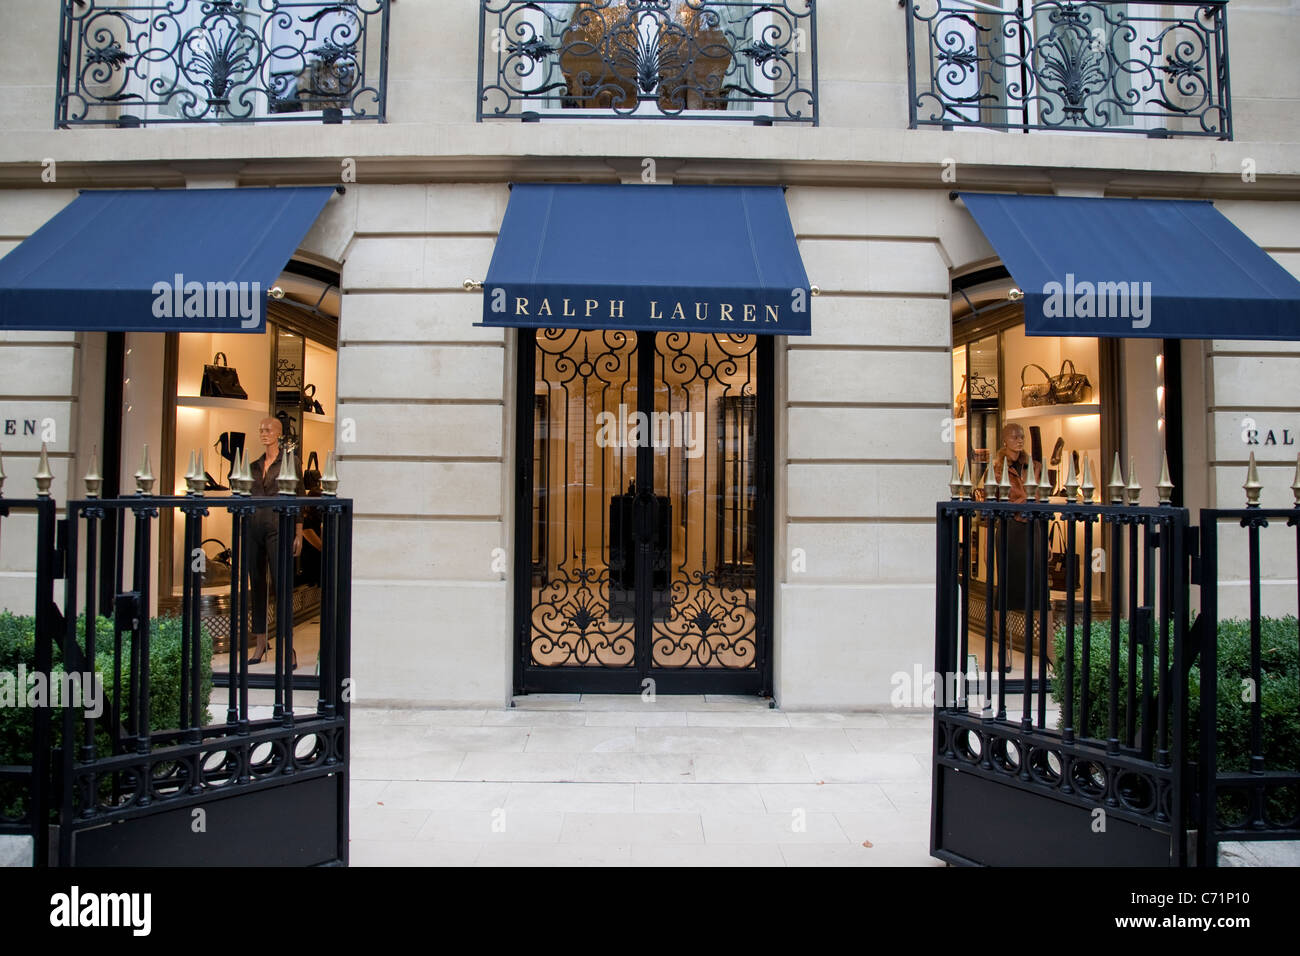 Ralph Lauren Shop on Avenue Montaigne, Paris Stock Photo - Alamy